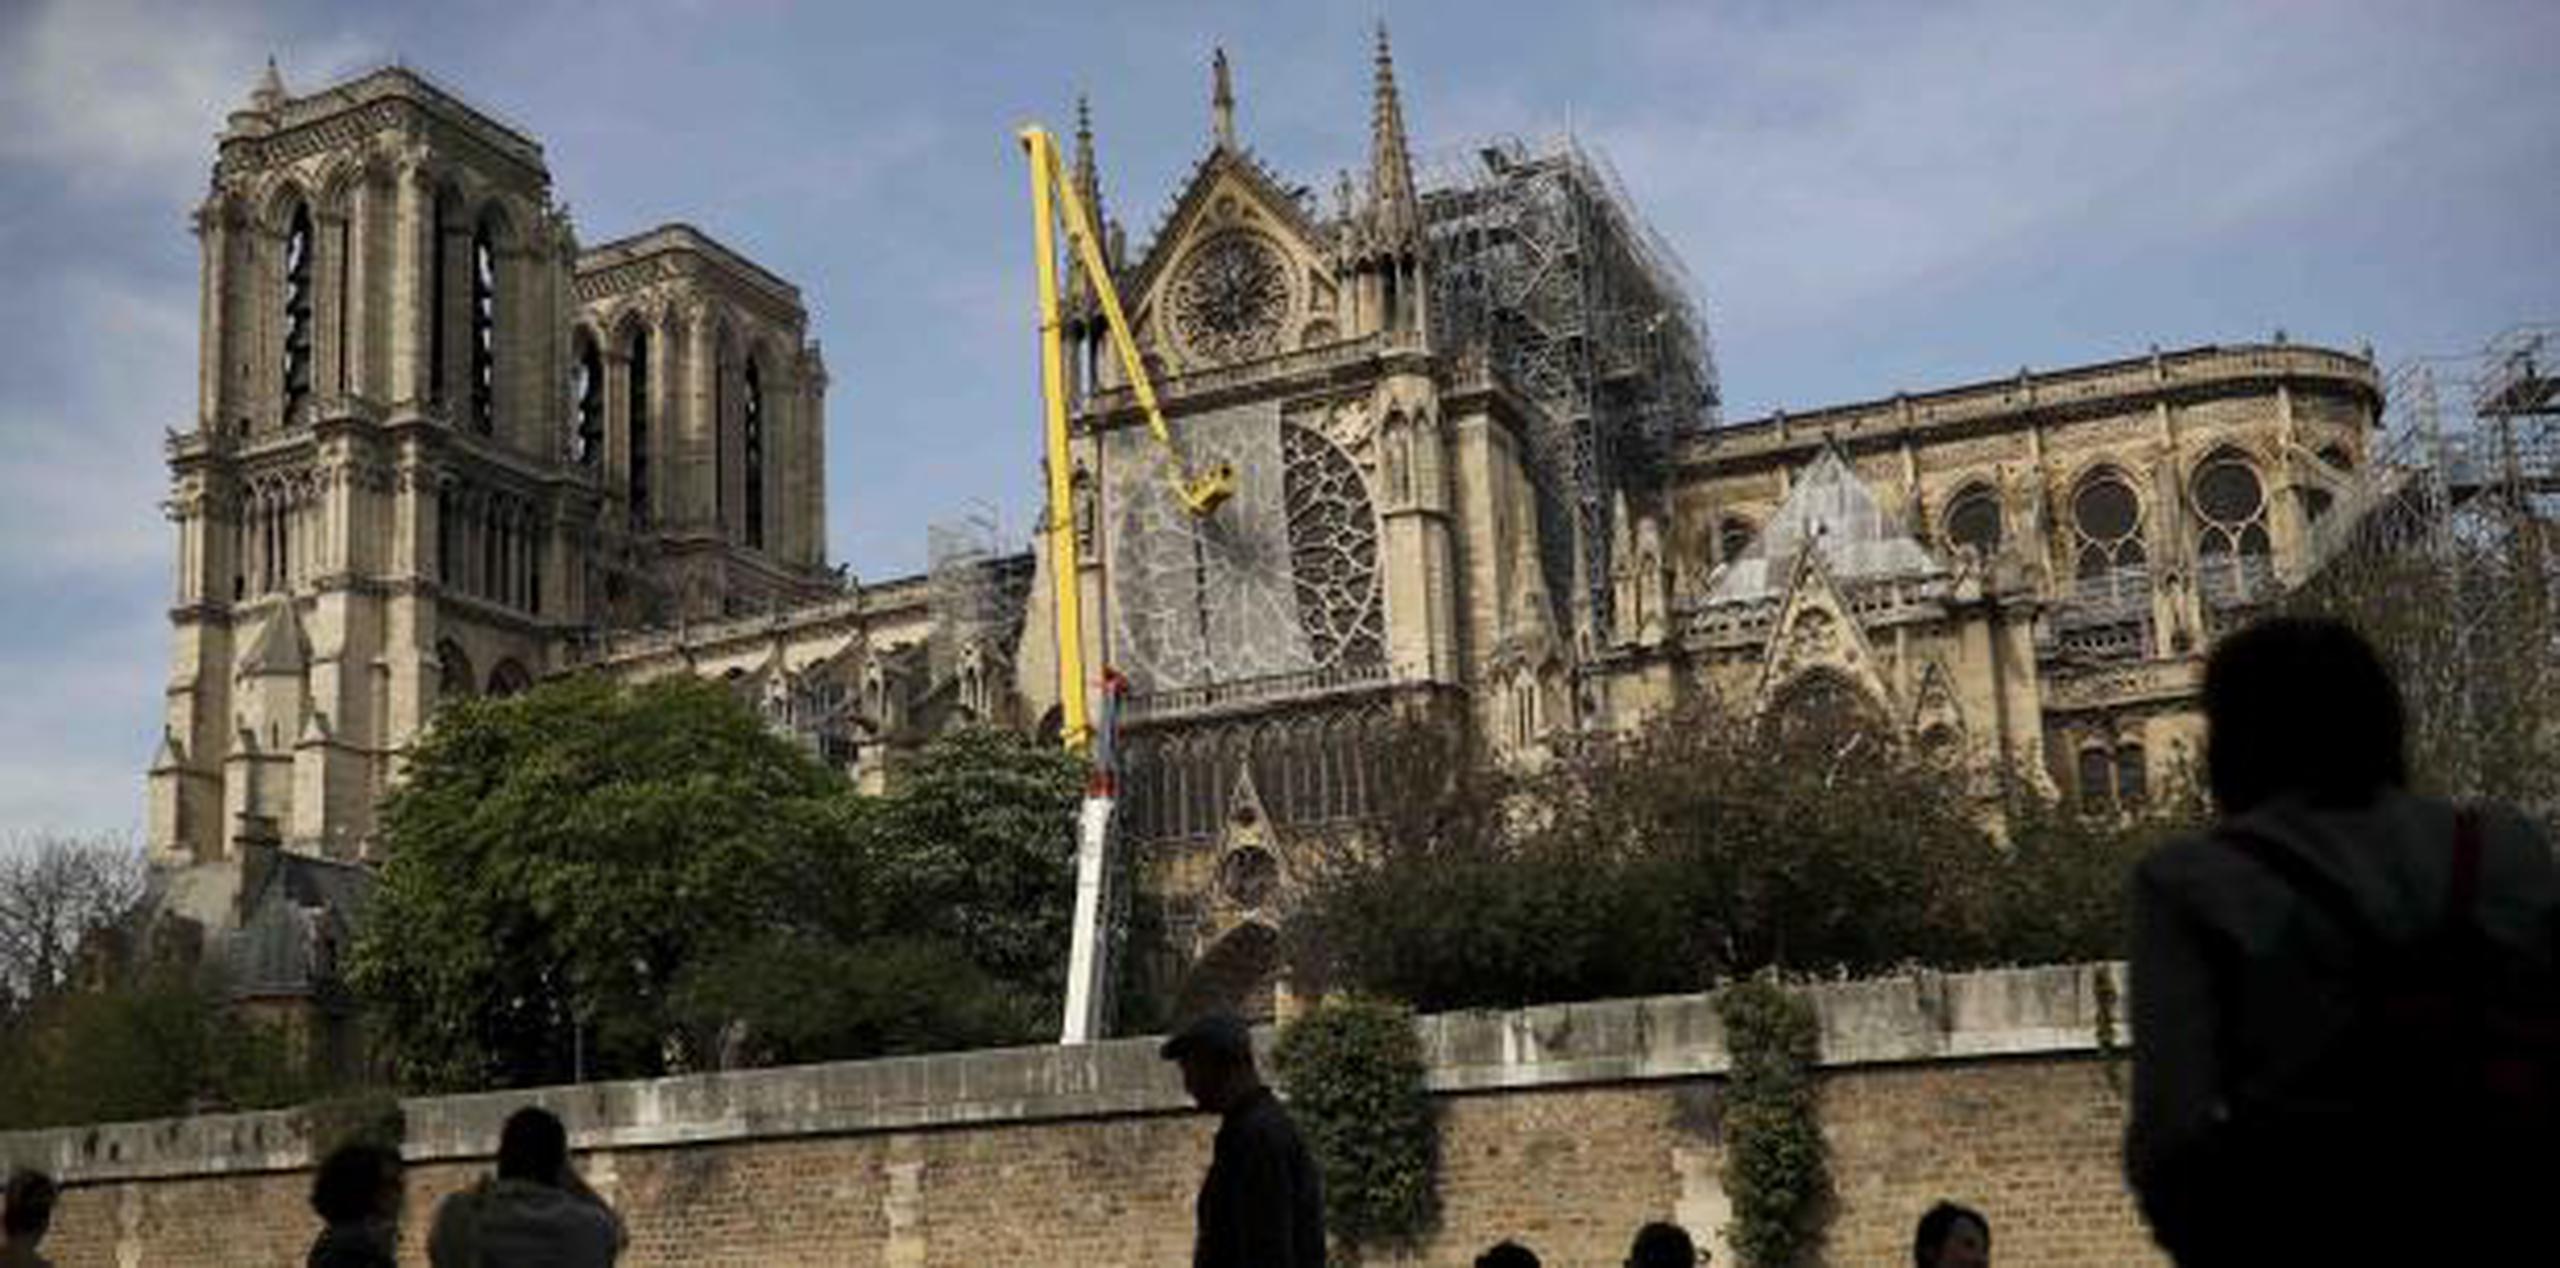 Trabajadores arreglaron una red para cubrir una de las icónicas vidrieras de la catedral de Notre Dame el pasado domingo. (AP / Francisco Seco)